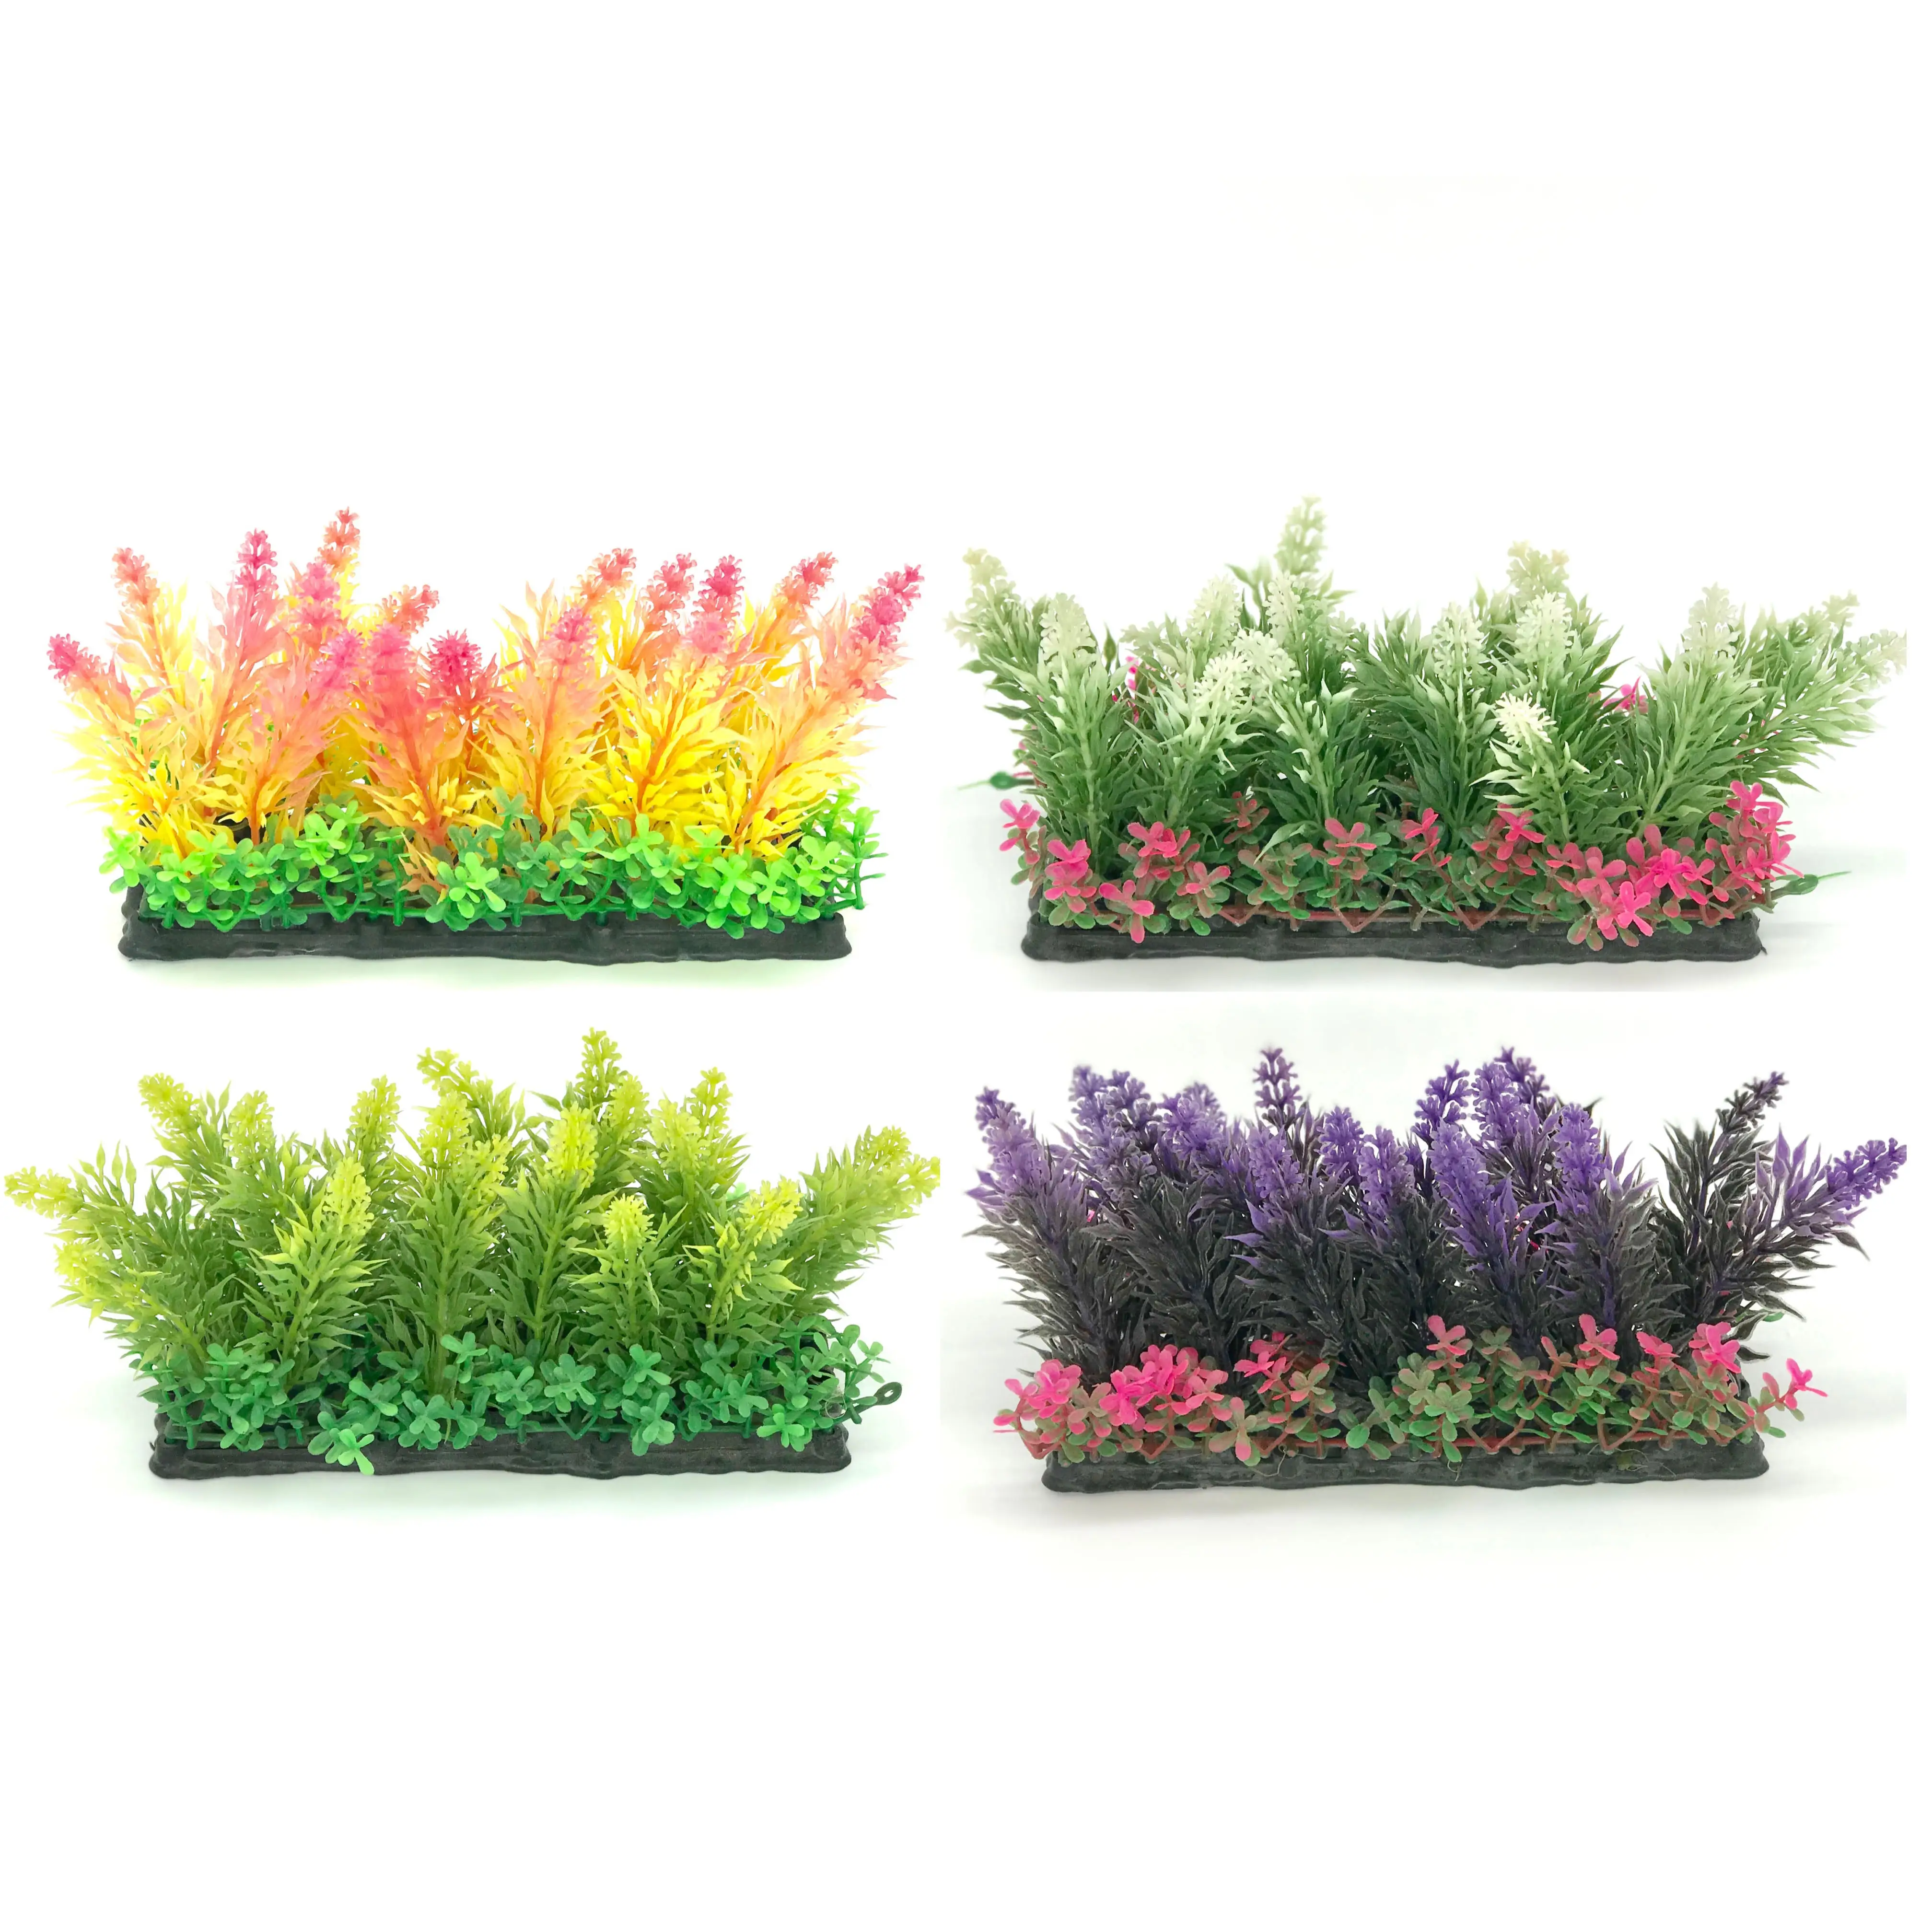 Cheap Price Aquarium Ornament Colorful Plastic Plants For Aquarium Fish Tank Decoration